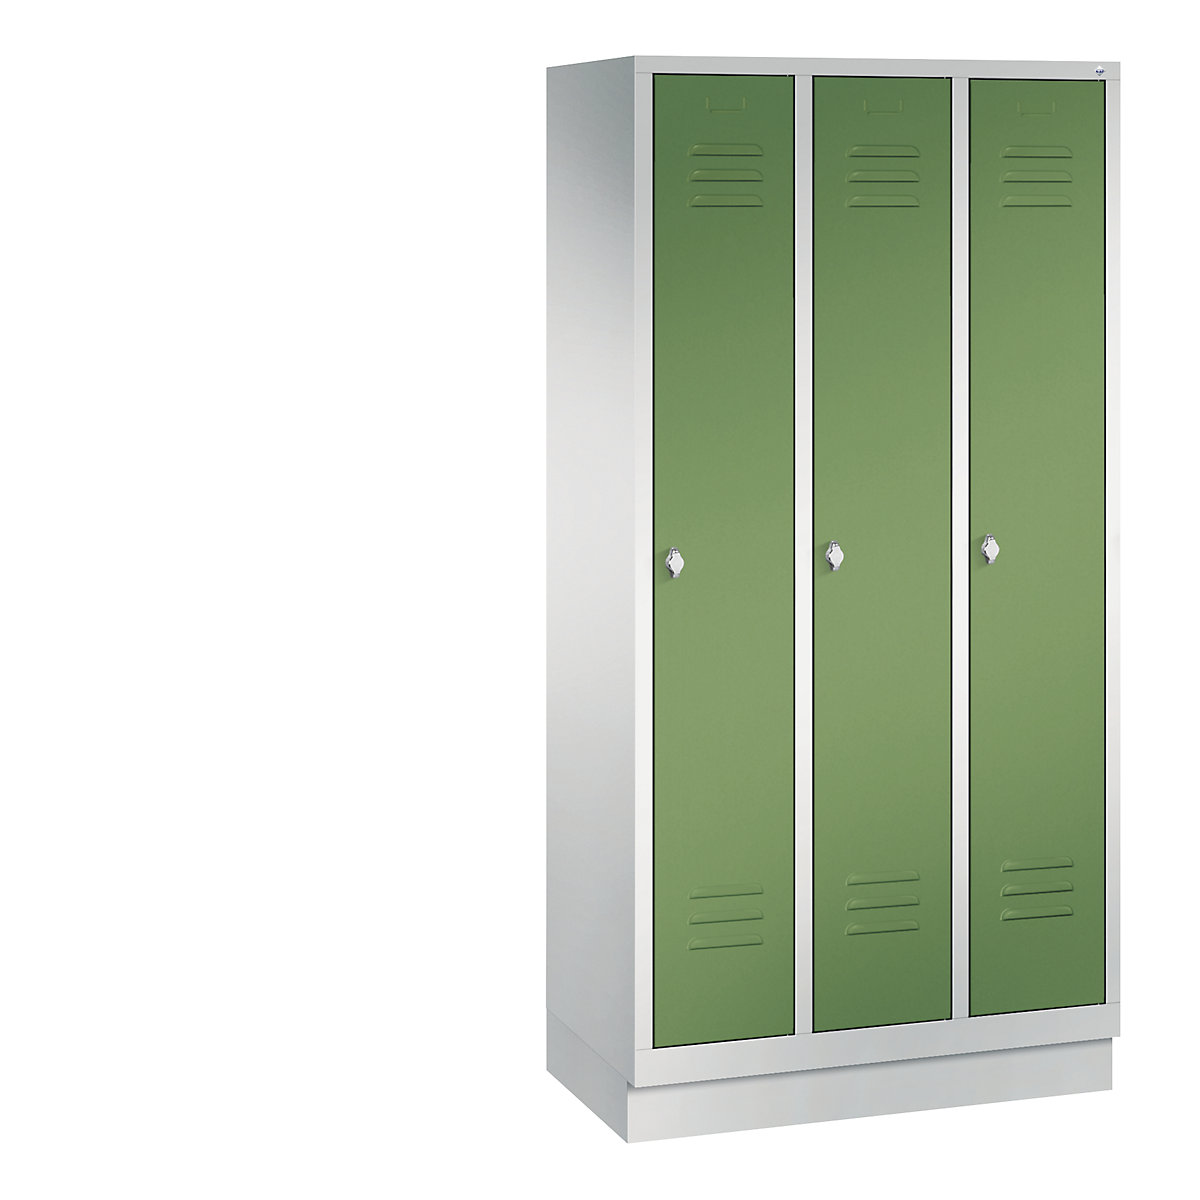 Garderobna omara CLASSIC s podnožjem – C+P, 3 predelki, širina 300 mm/predelek, svetlo sive / reseda zelene barve-14